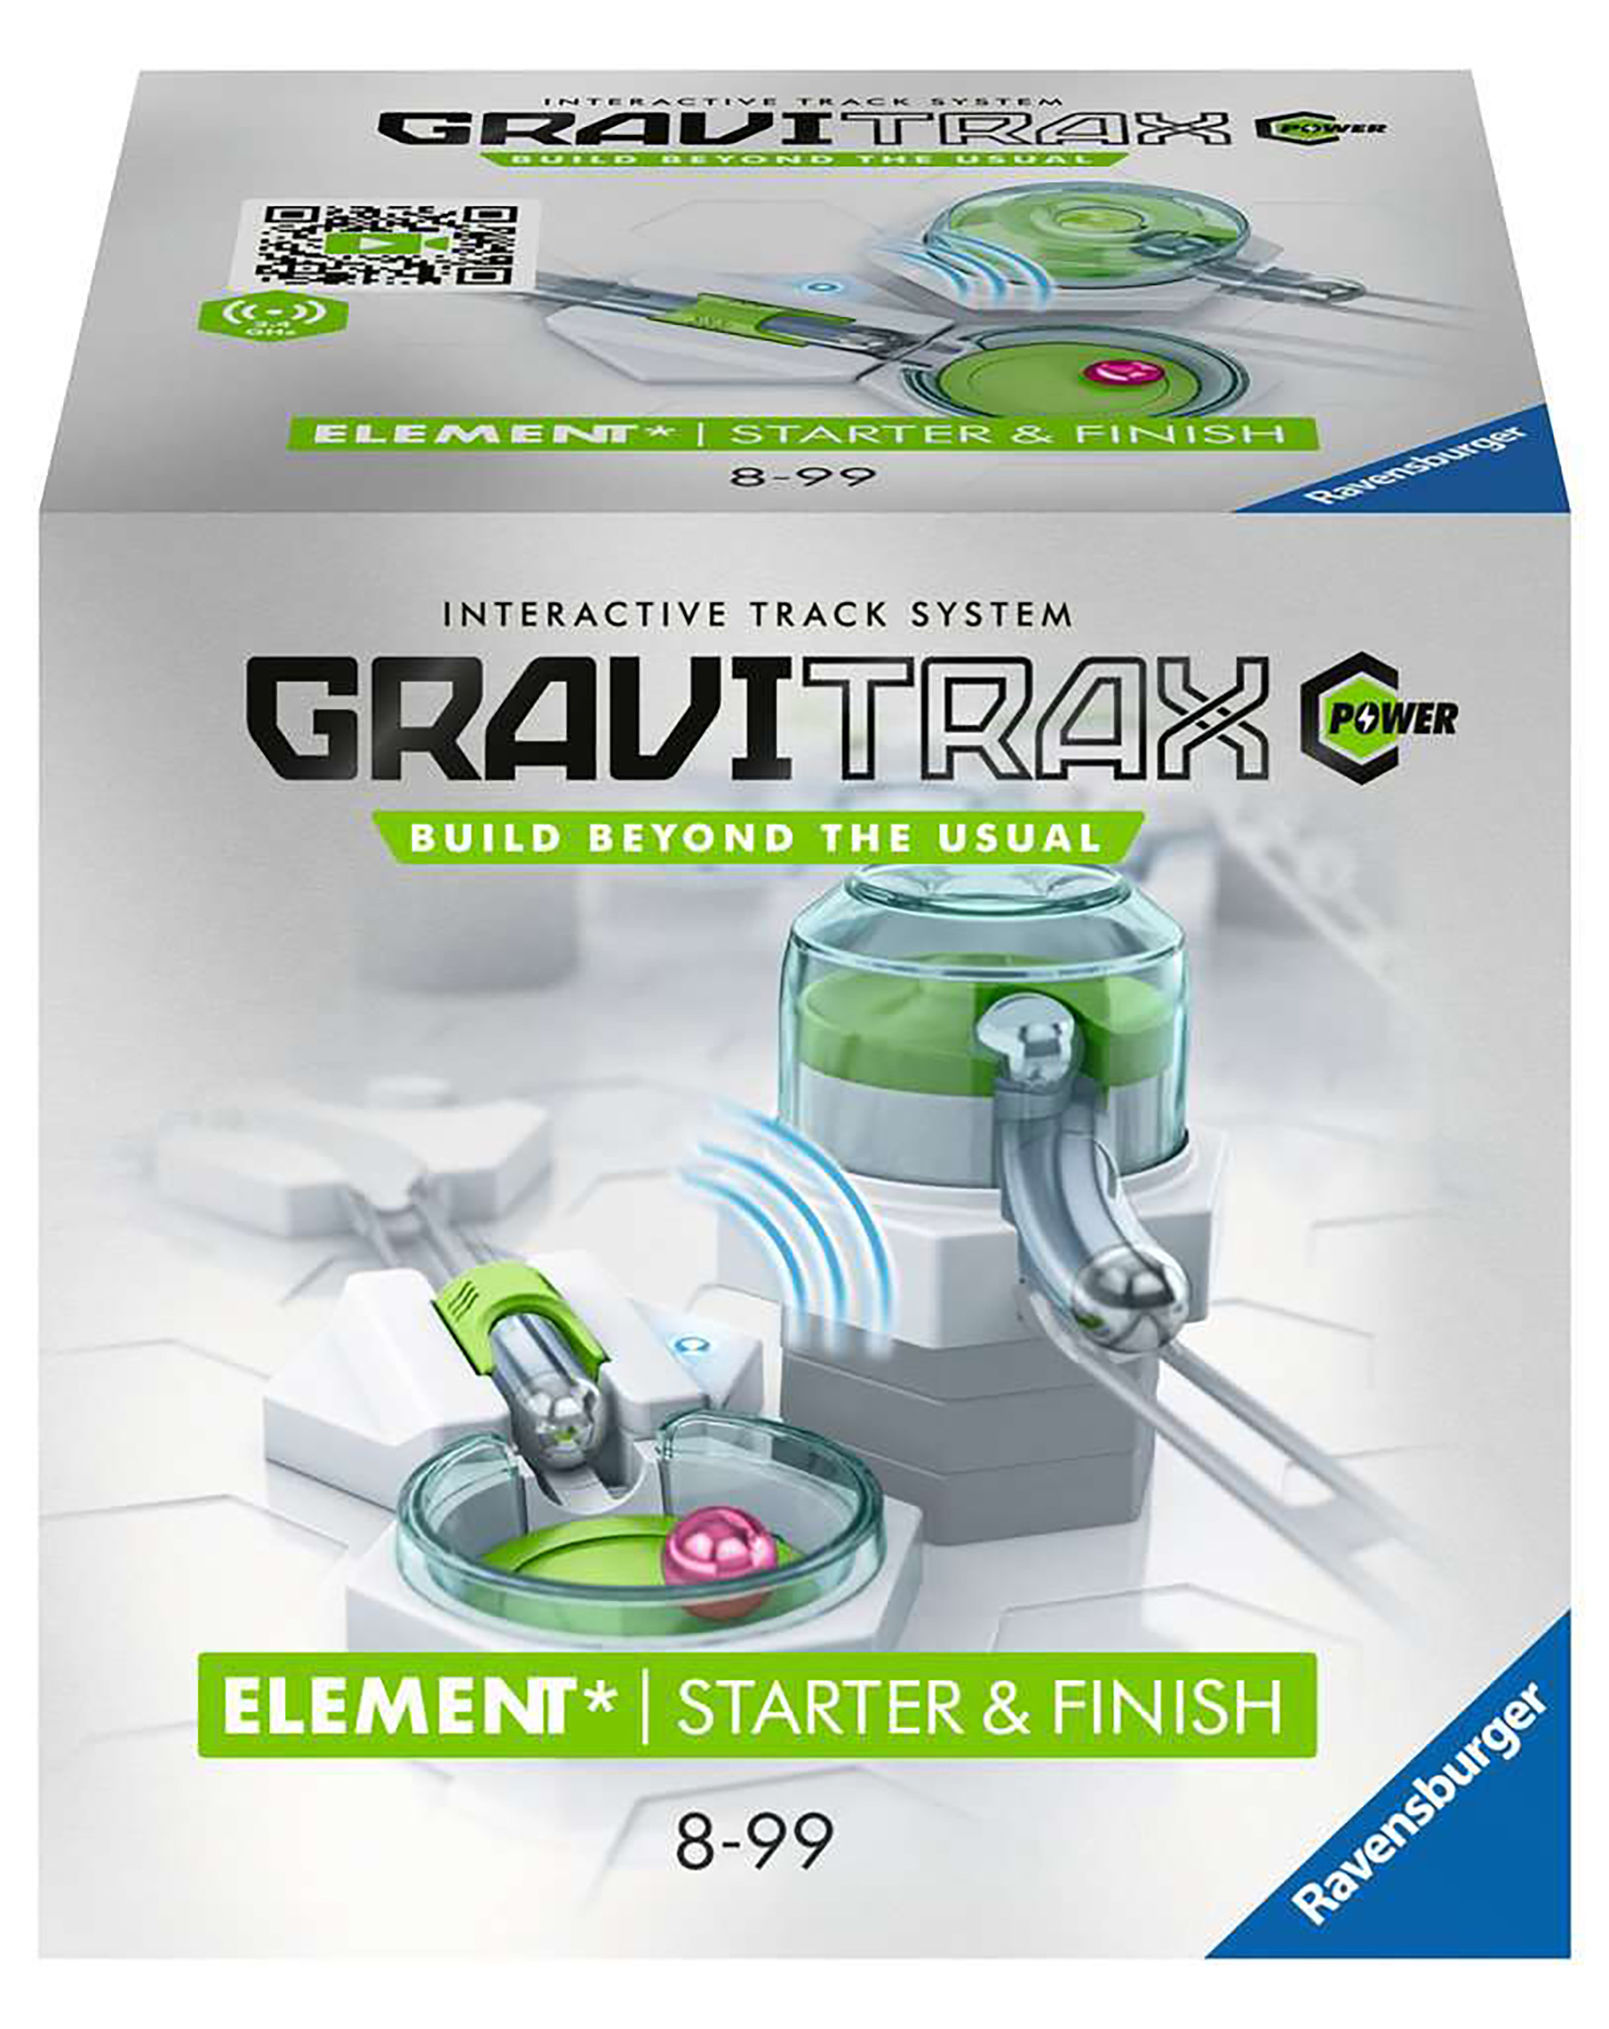 Erweiterung-Element GRAVITRAX® POWER STARTER & FINISH kaufen